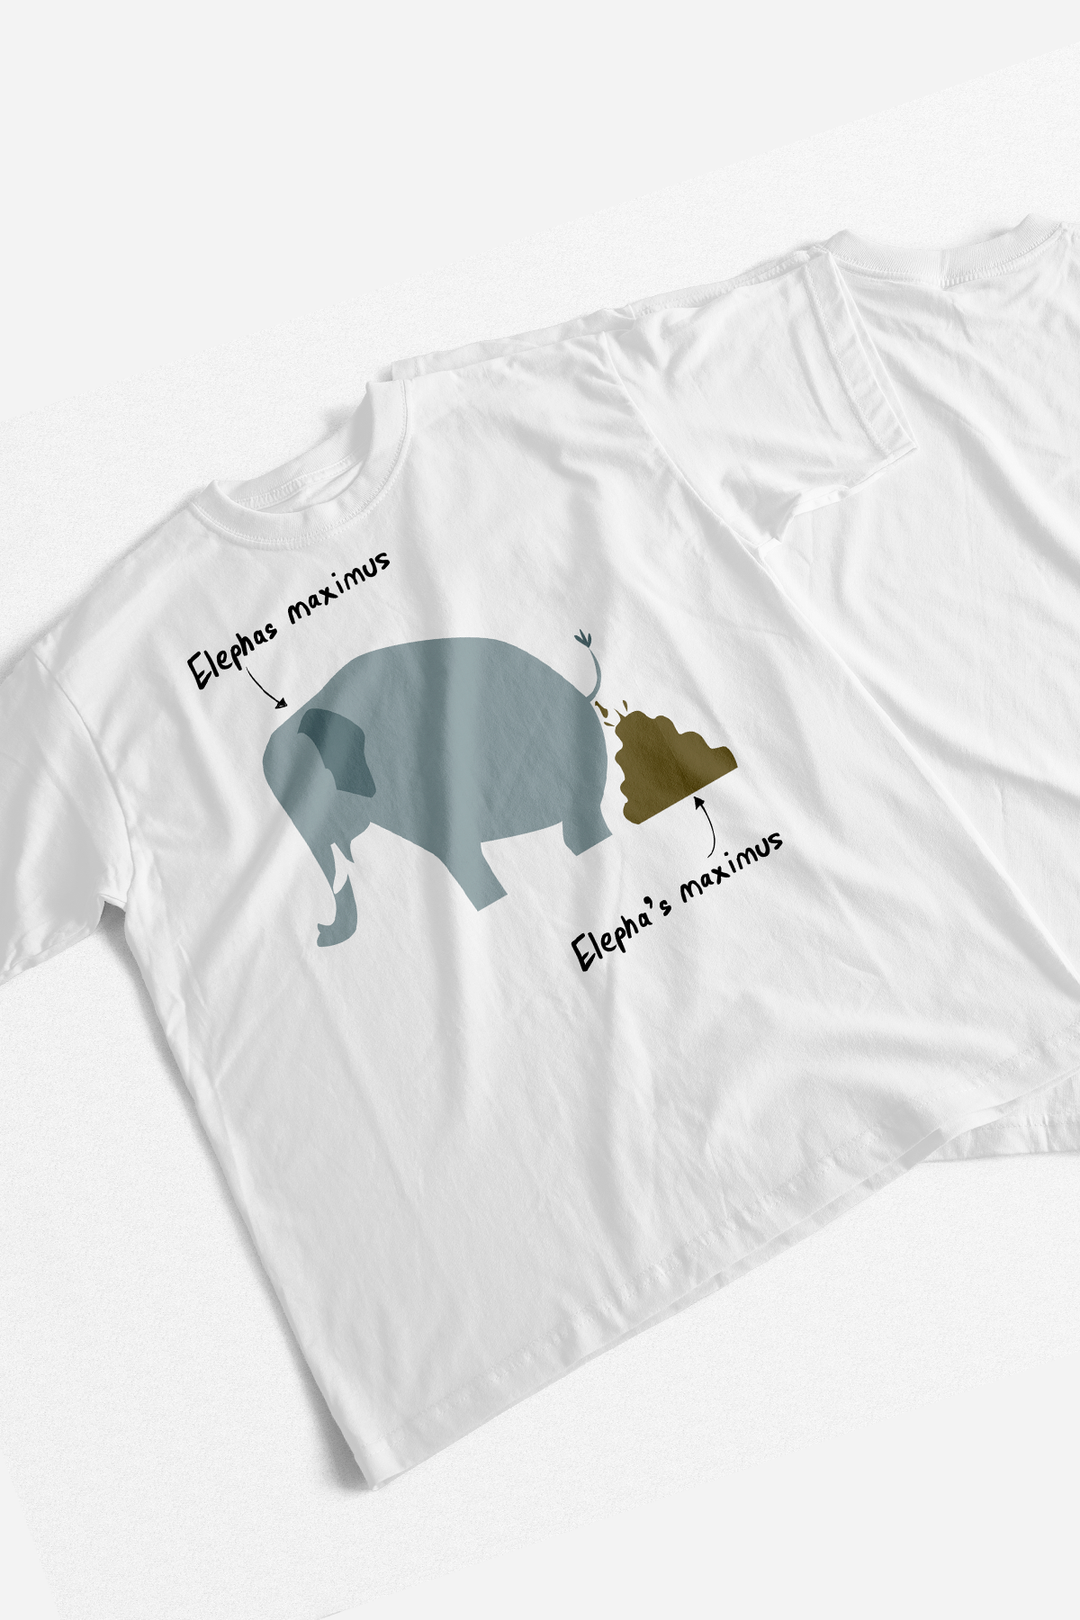 Elephas Maximus T-Shirt